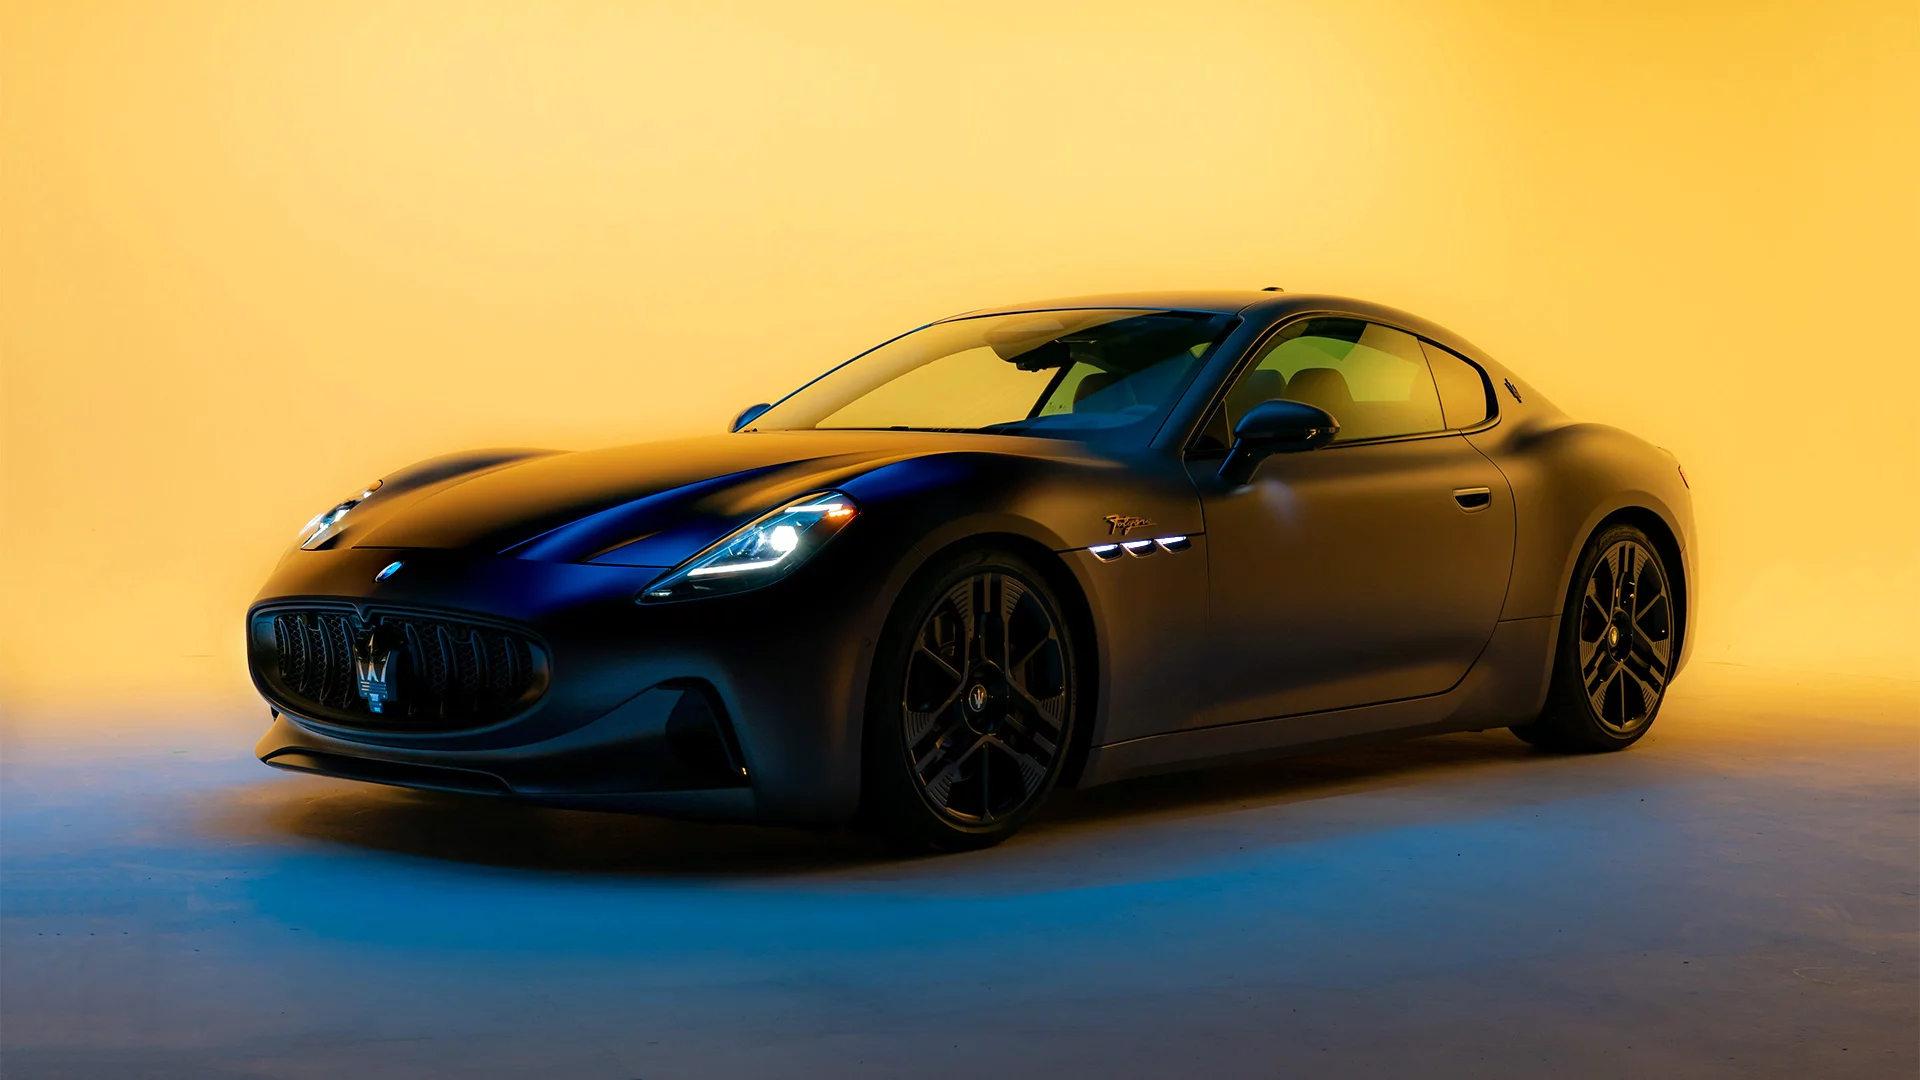 Harga Maserati Granturismo Terbaru, Spesifikasi dan Interior 2022!